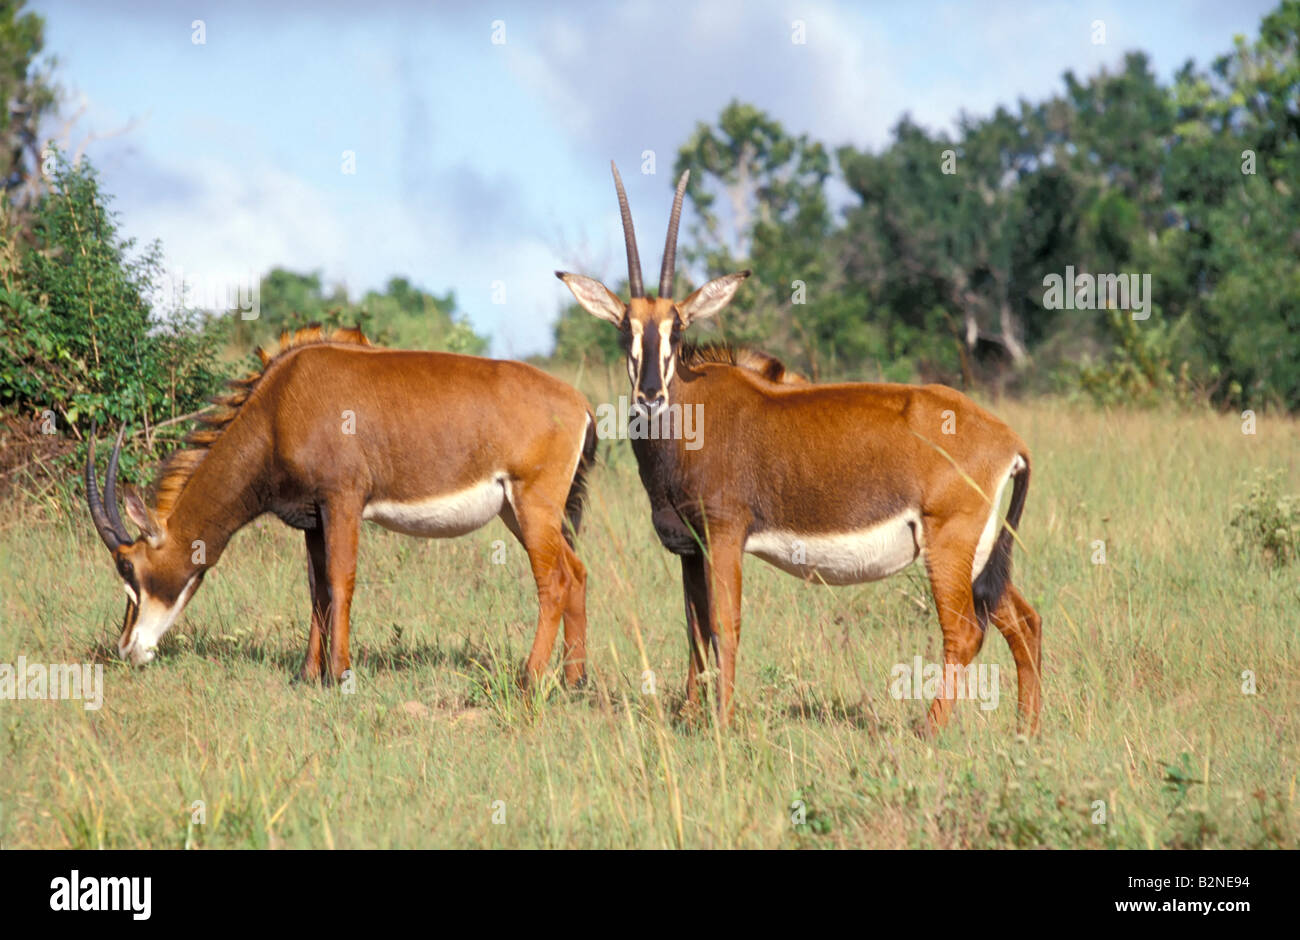 Femelle adulte hippotrague dans la réserve de Shimba Hills, Mombasa, Kenya. Banque D'Images